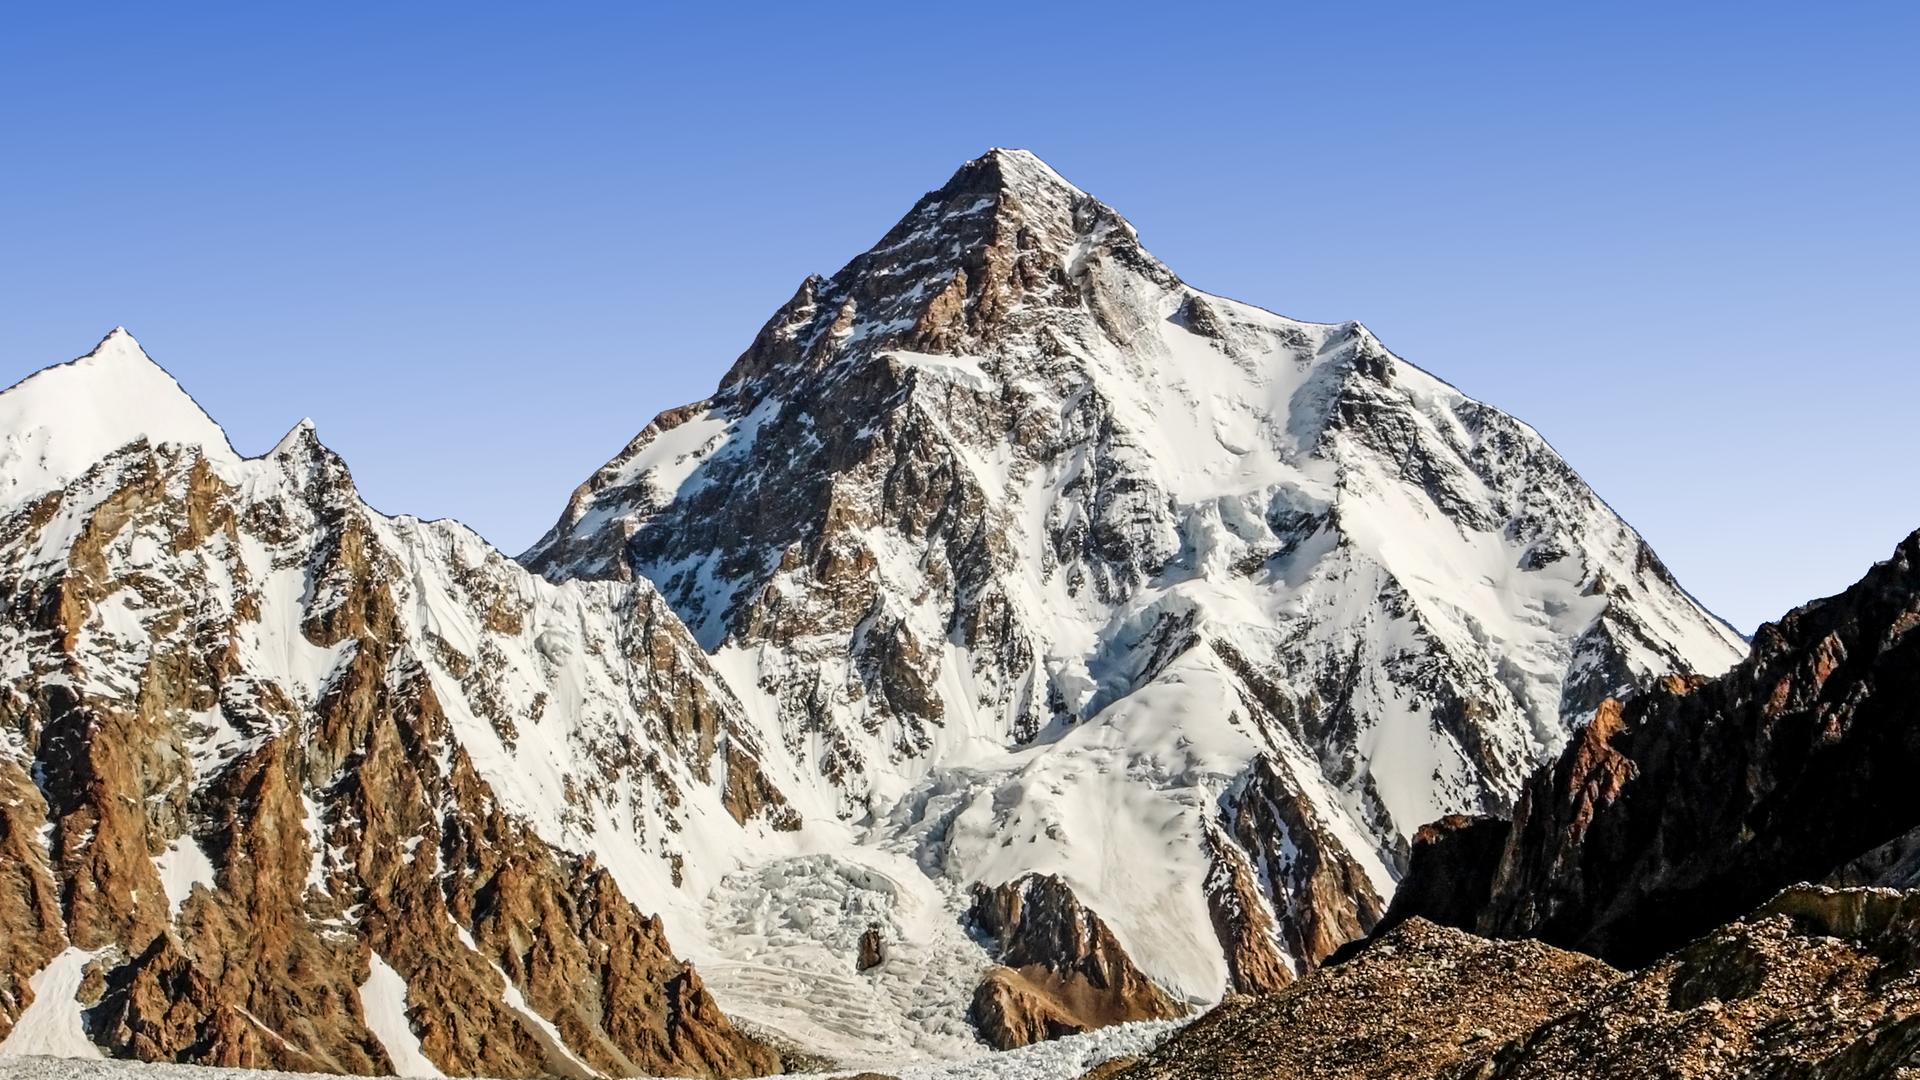 Panorama-Ansicht des K2-Berges mit schroffen, steilen Wänden.